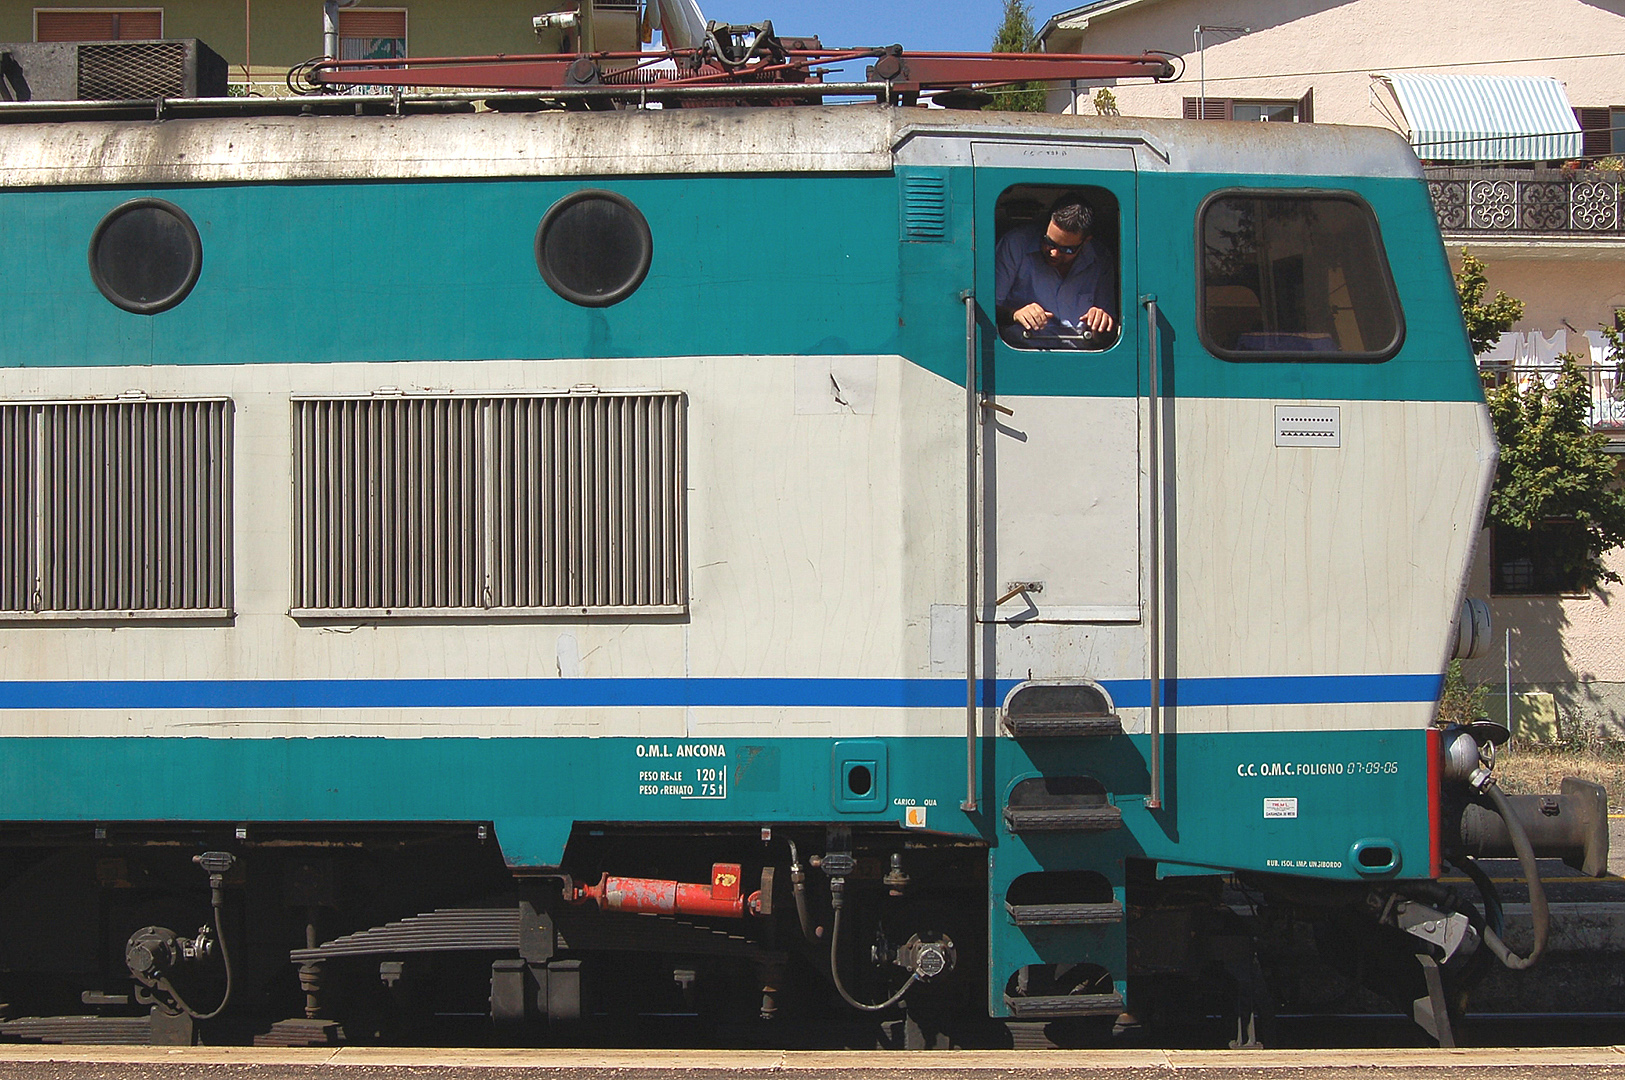 Locomotief E 656 (Abruzzen, Itali); Locomotive E656 (Abruzzo, Italy)